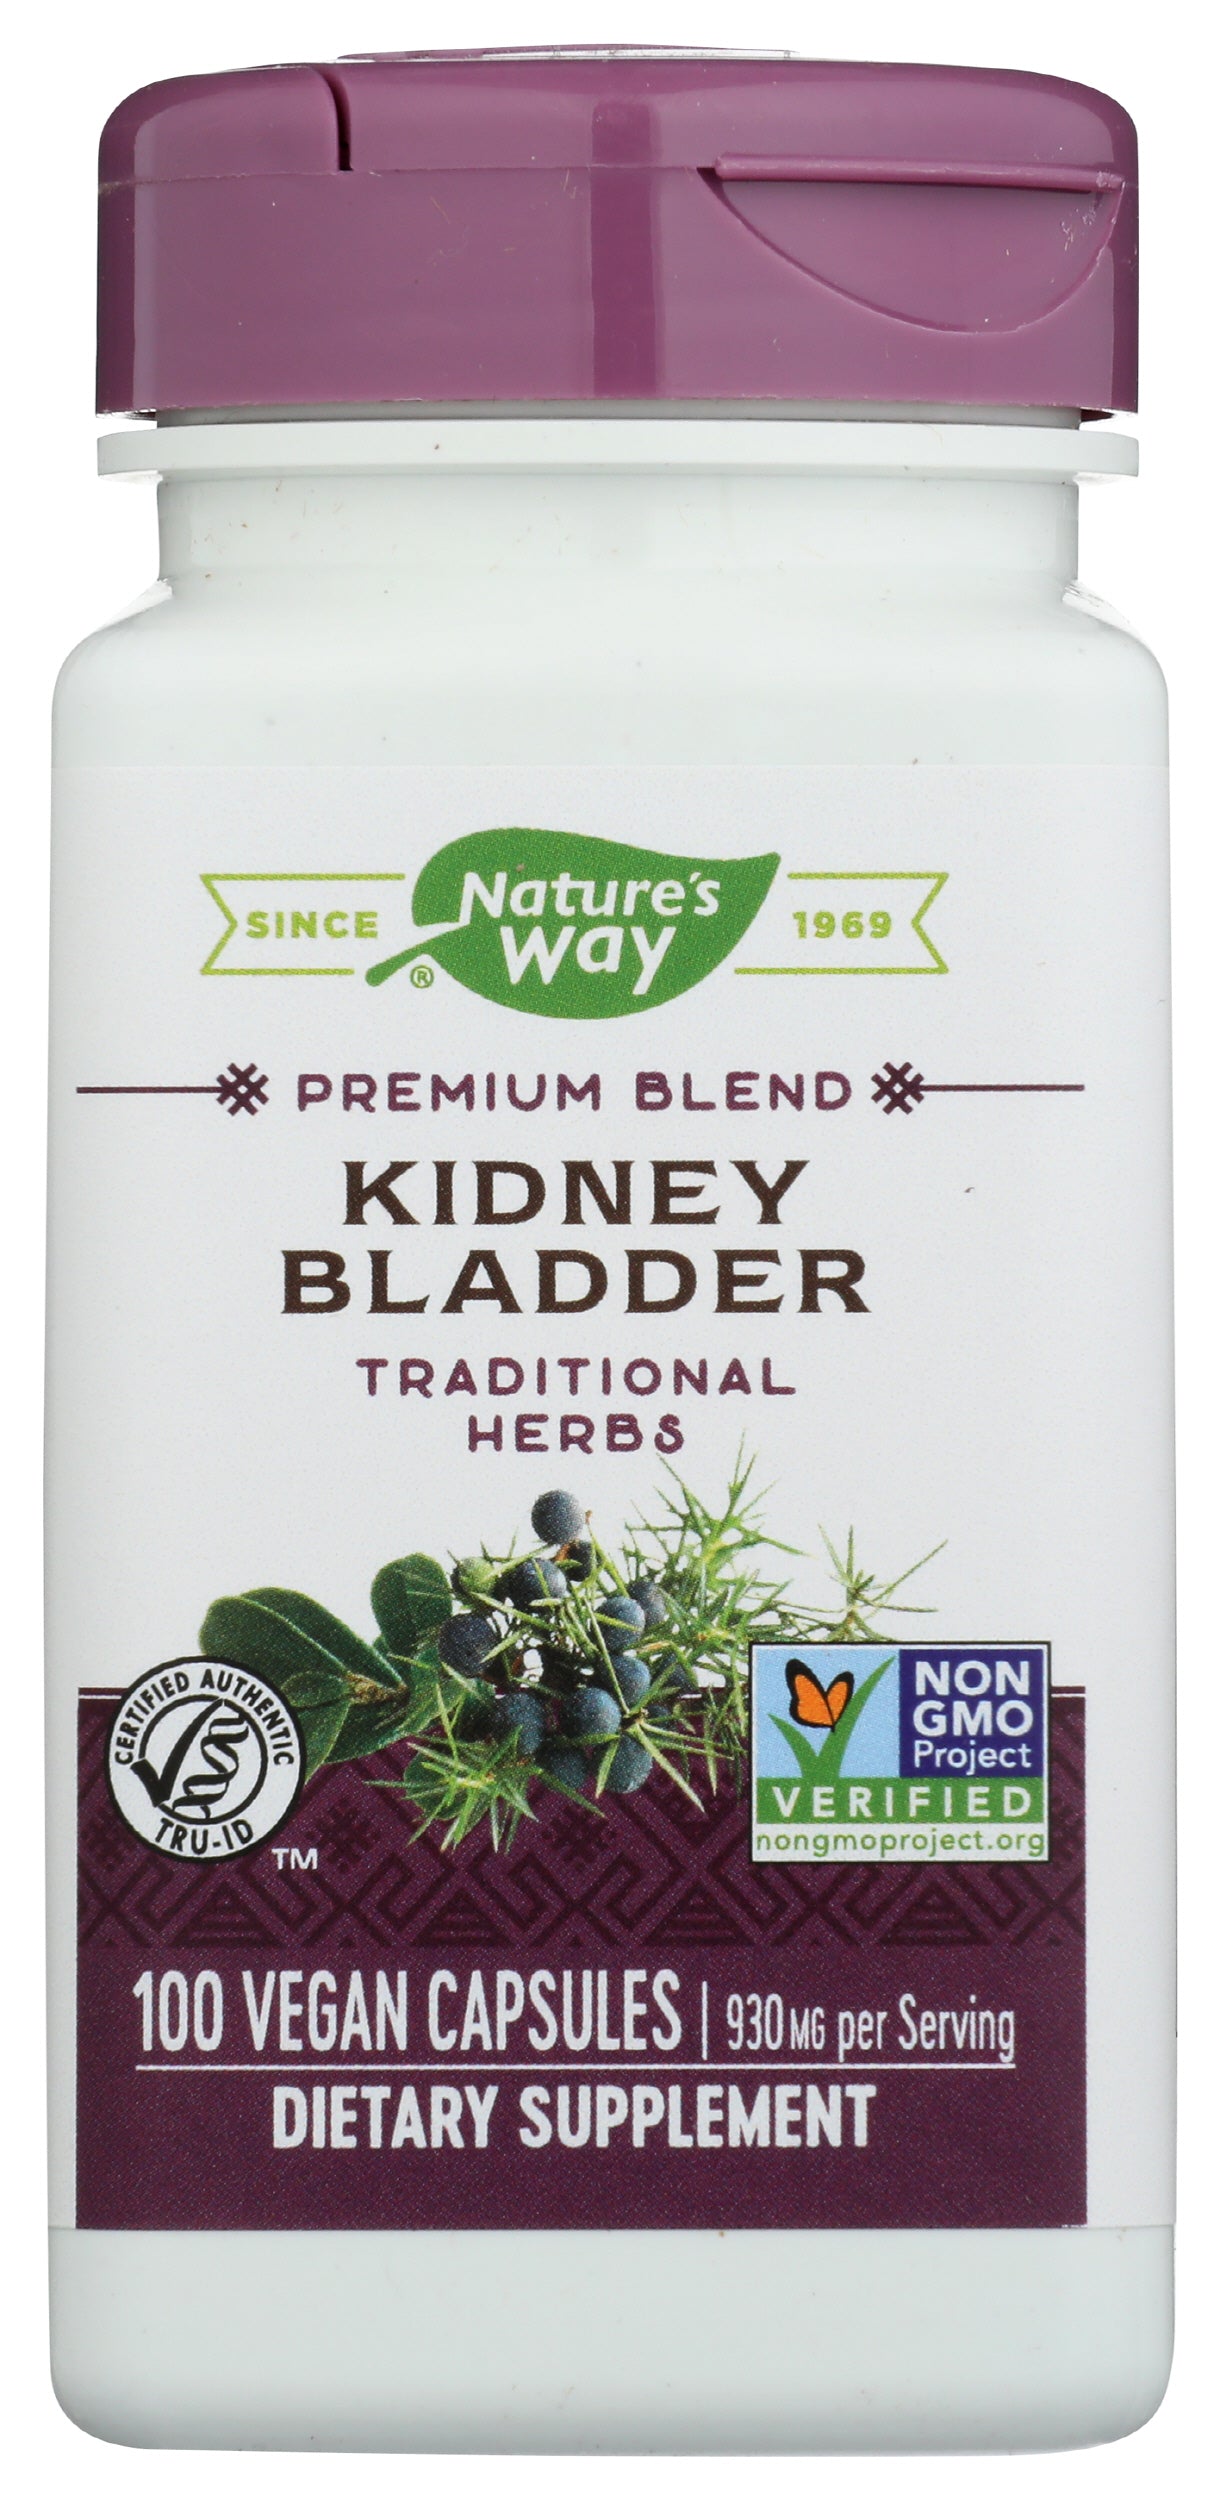 Nature's Way Kidney Bladder 100 Vegan Capsules